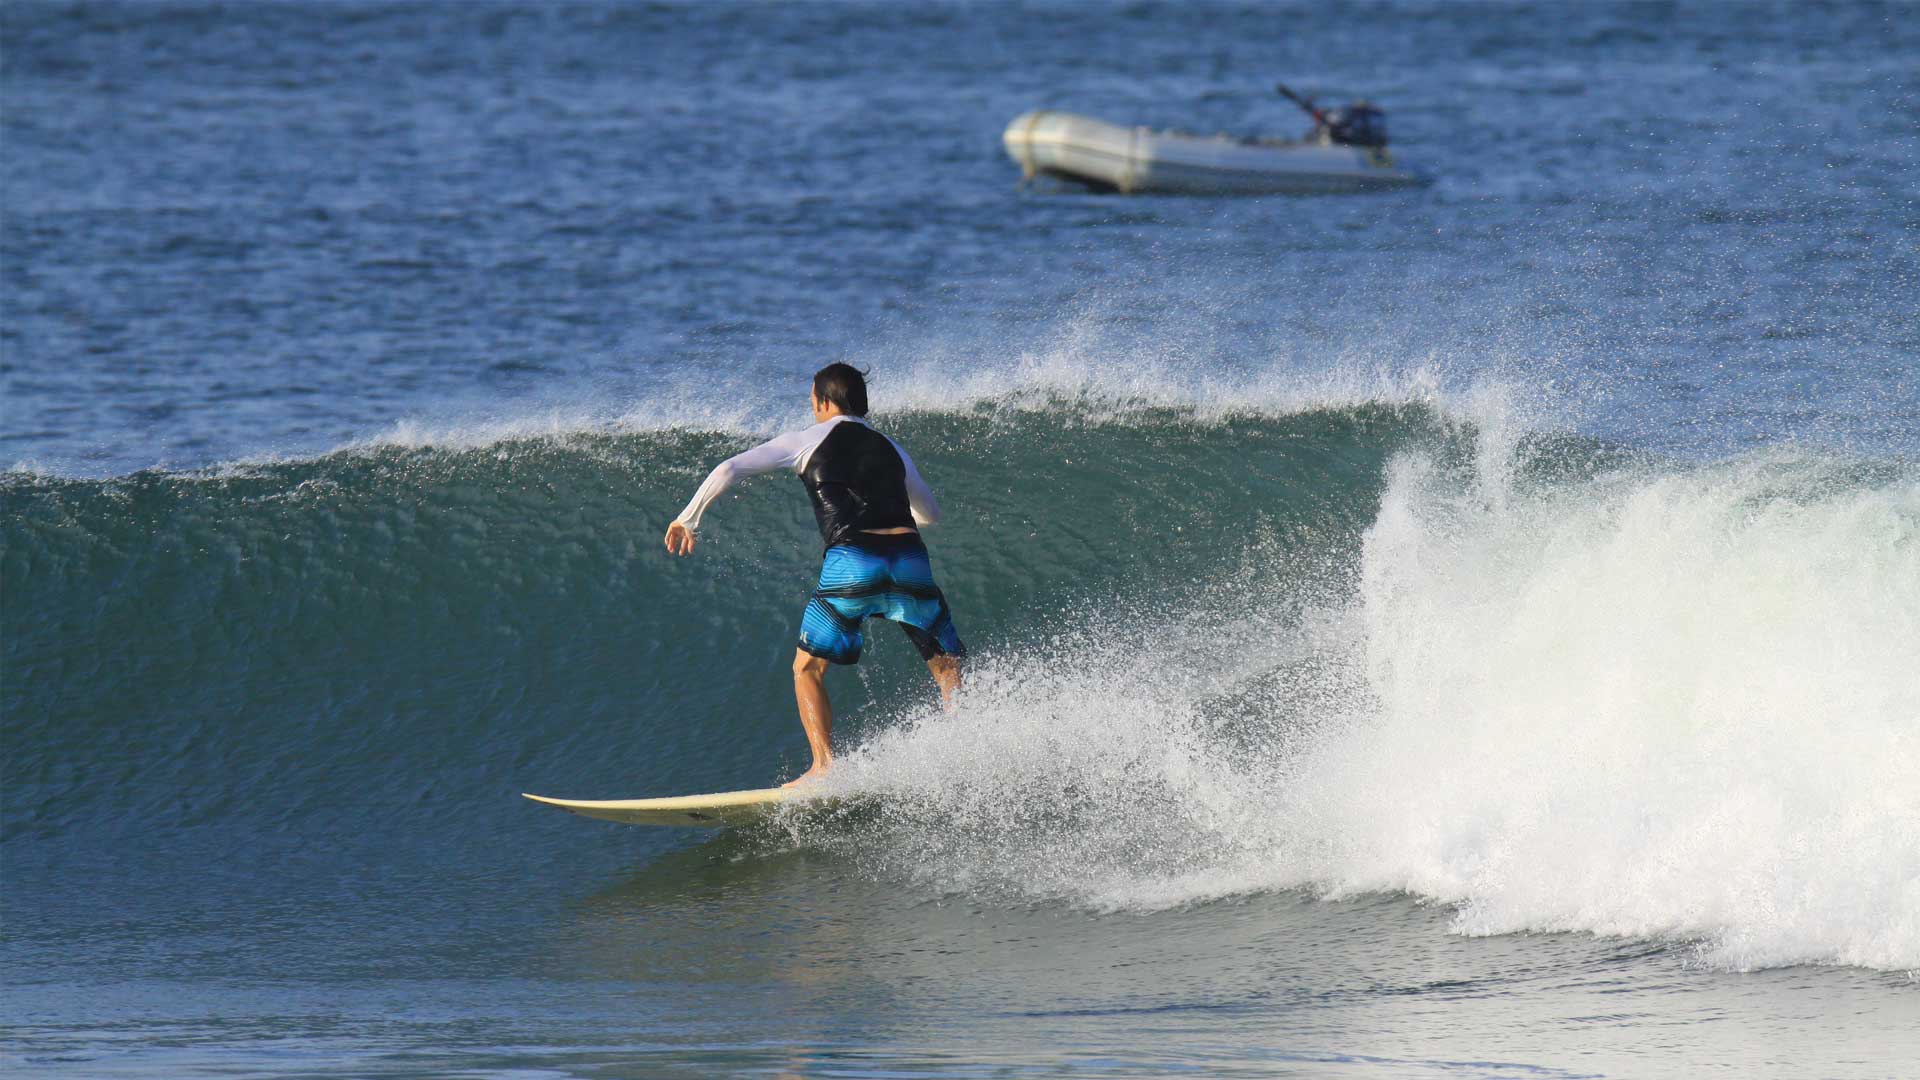 Surfer surfing wave at Playa Grande beach in Guanacaste, Costa Rica